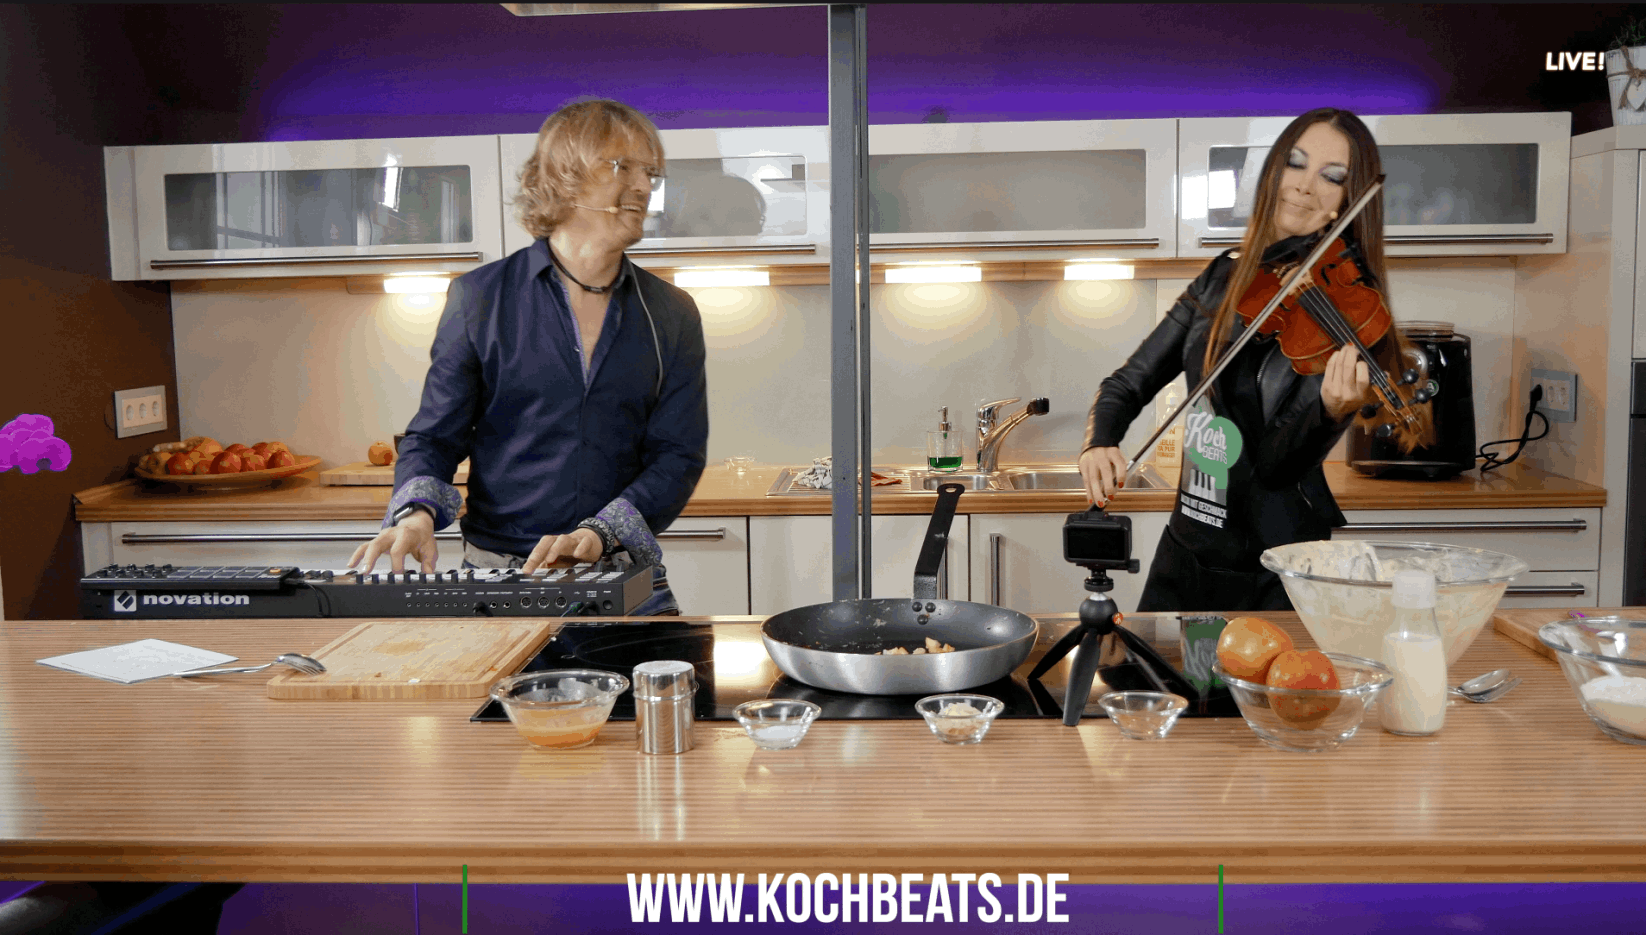 Kochbeats-Uwe-Thielker-youtube-Vorschau-bild-mit-Kathi Monta musik-mit-geschmack-dortmund-entertainment